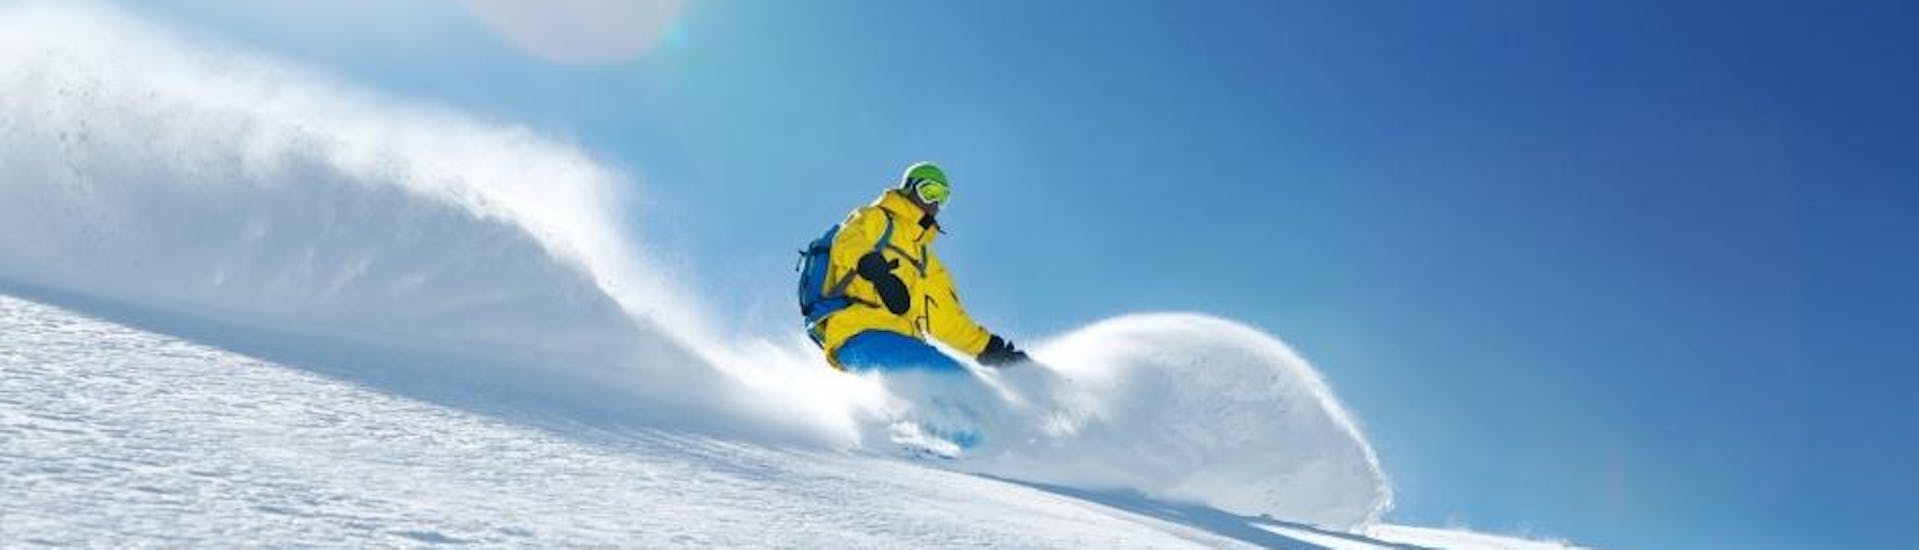 Clases de snowboard a partir de 15 años para todos los niveles con Skischule Toni Gruber.